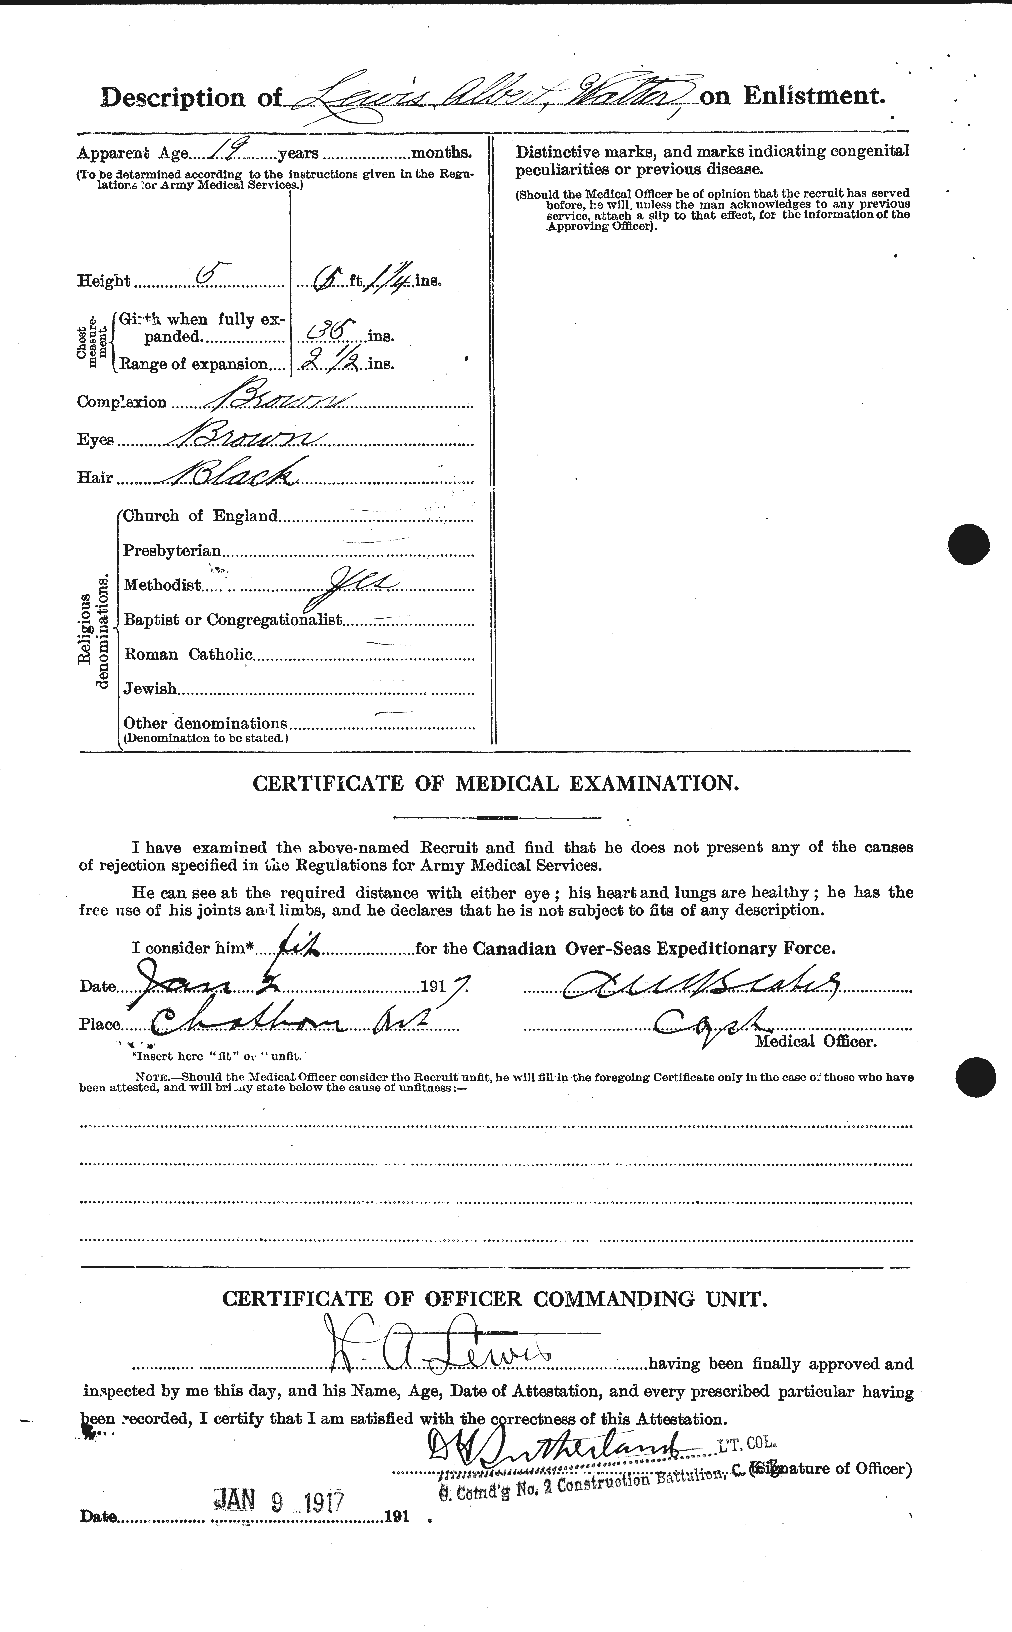 Dossiers du Personnel de la Première Guerre mondiale - CEC 464022b